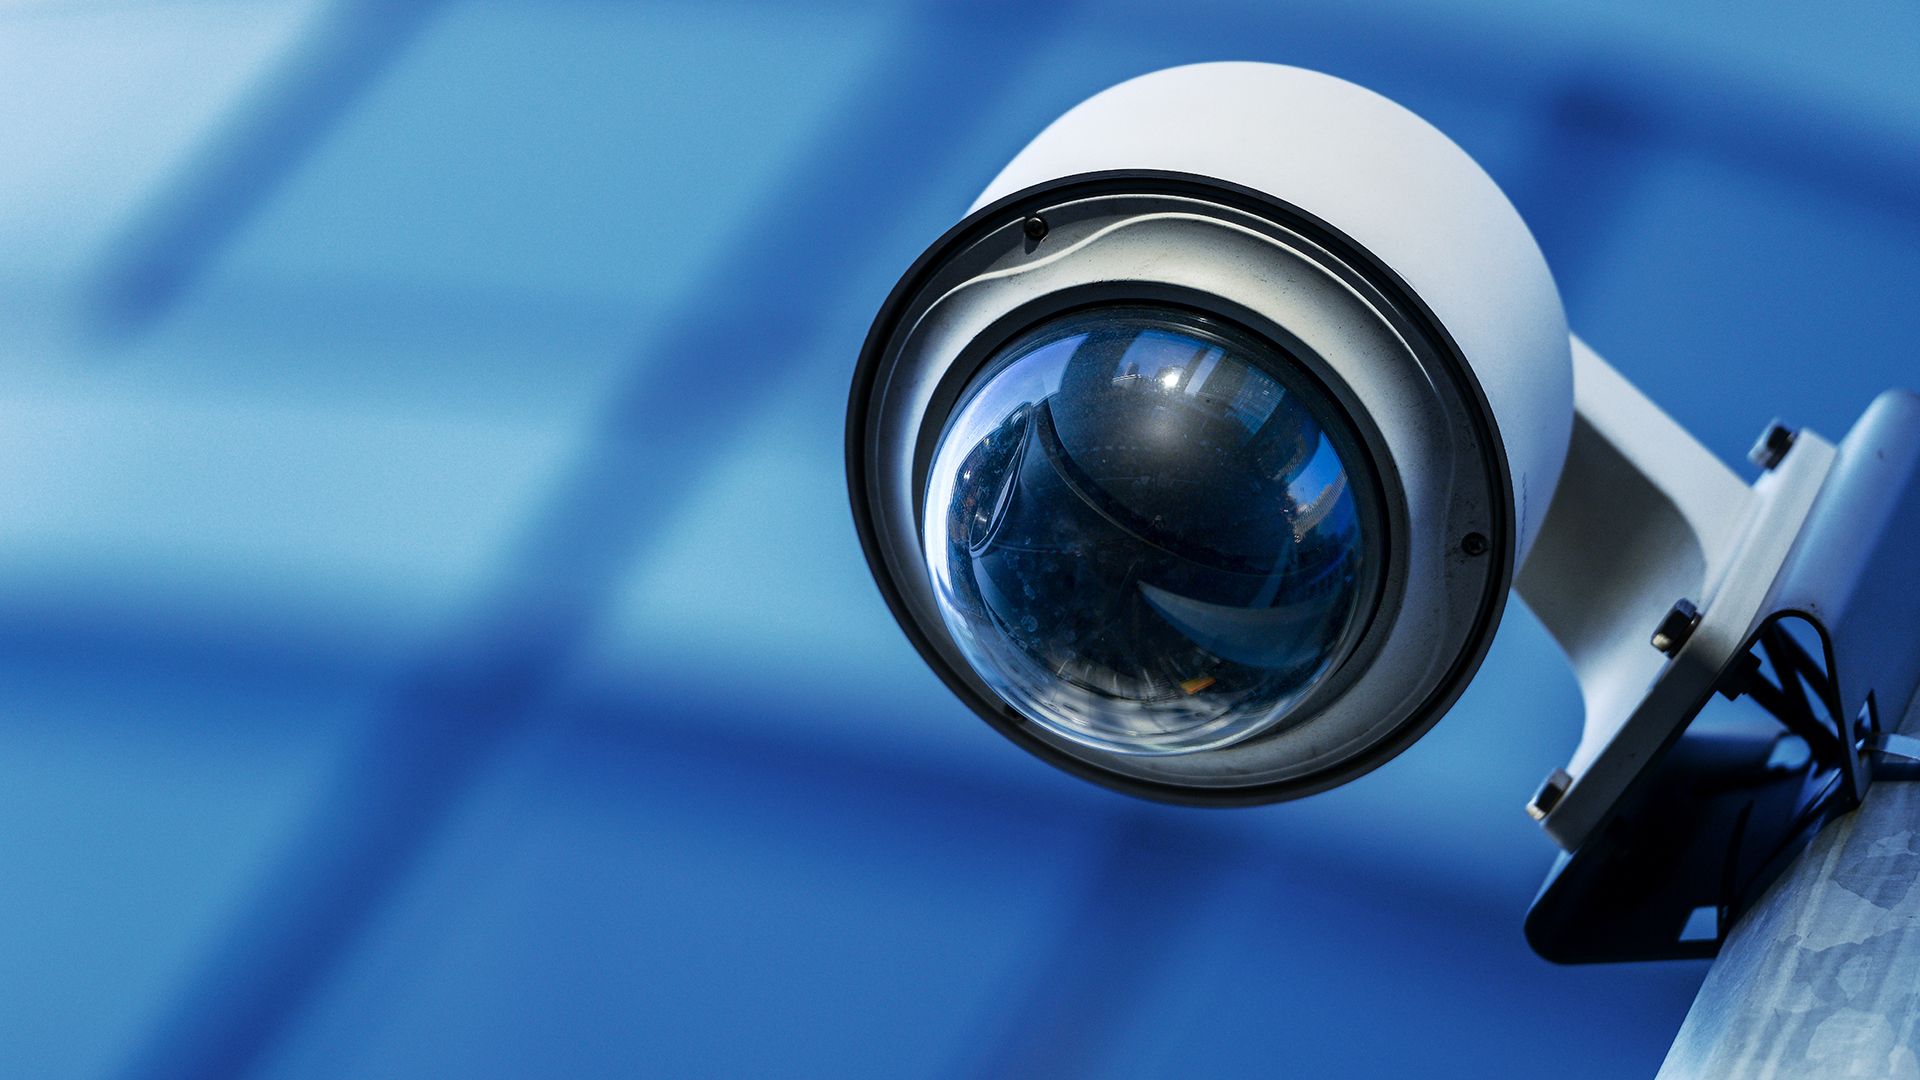 Blogs. CCTV Security camera Installation in Surrey, Vancouver